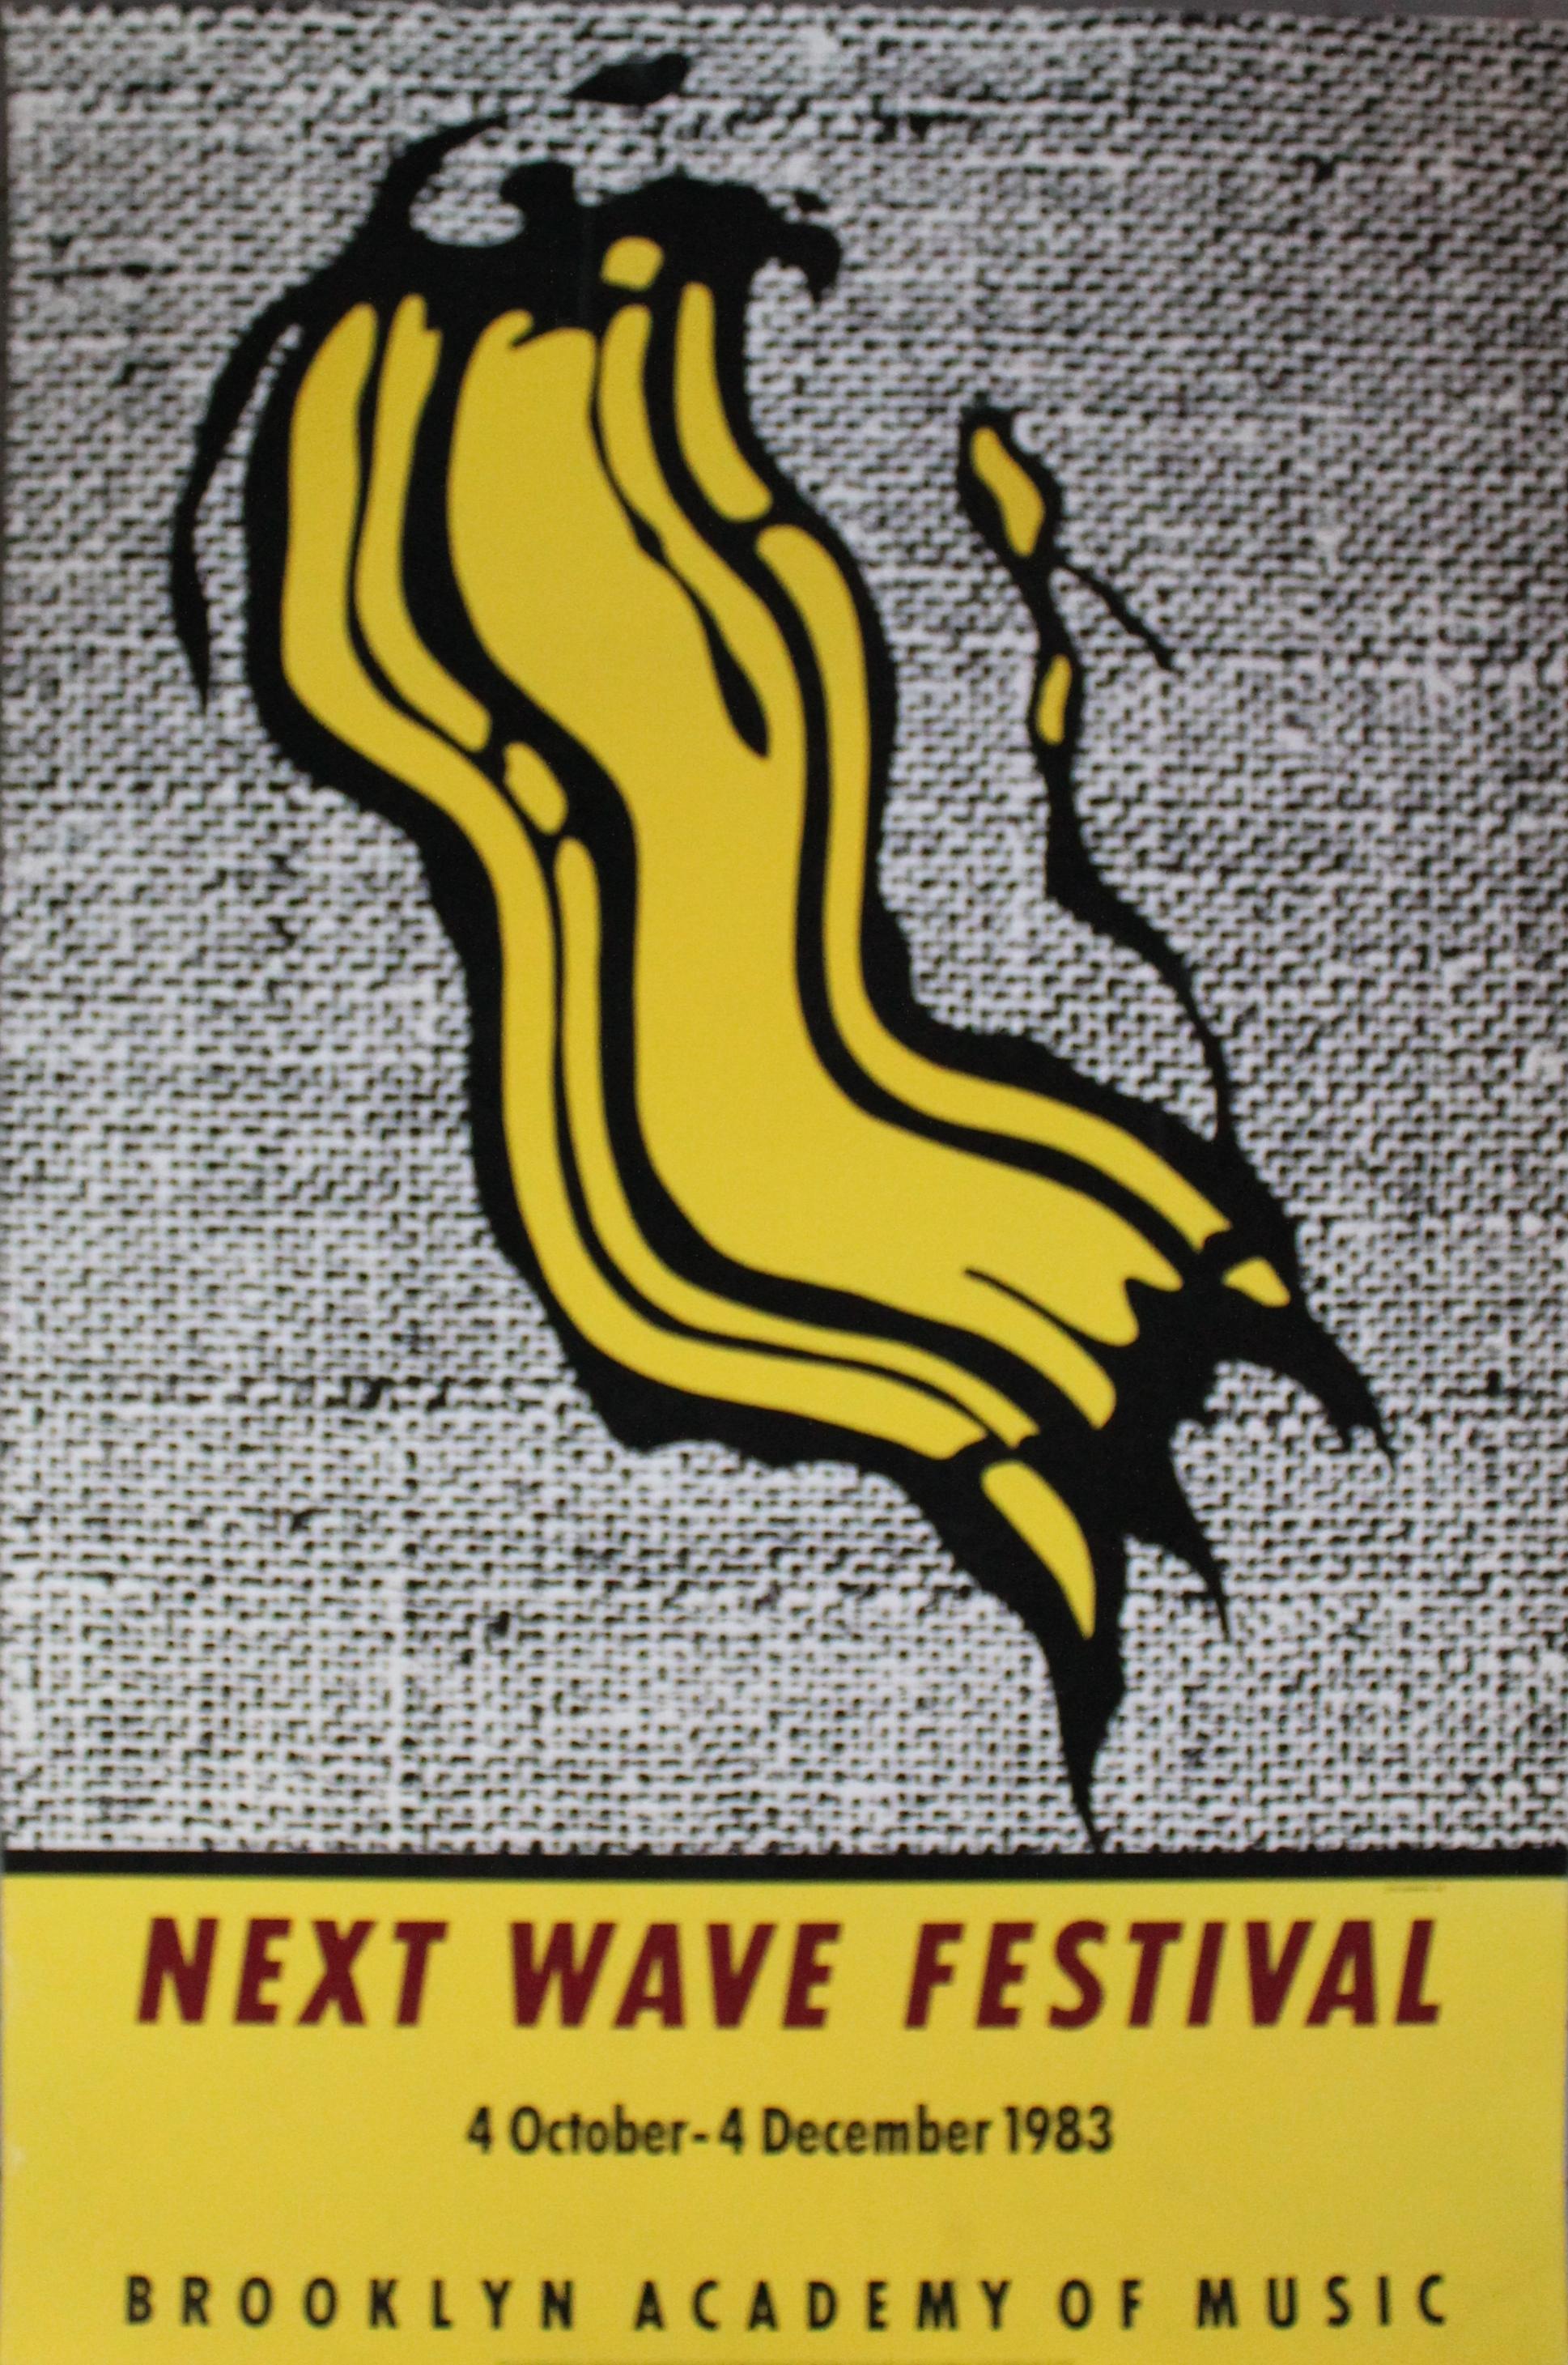 Important original Pop Art poster by Roy Lichtenstein for the 1983 